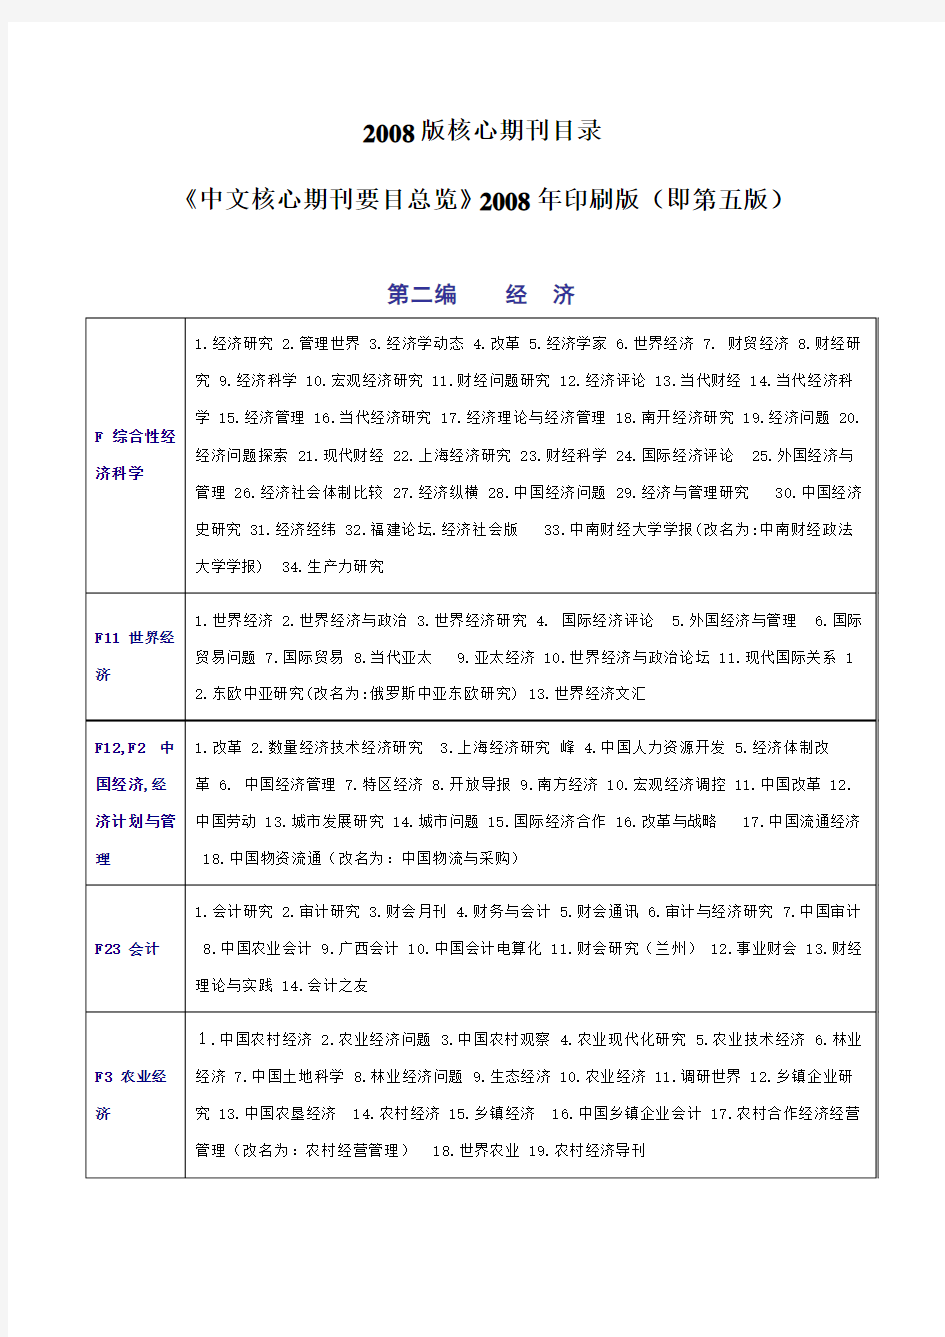 《中文核心期刊要目总览》2008年印刷版(即第五版)